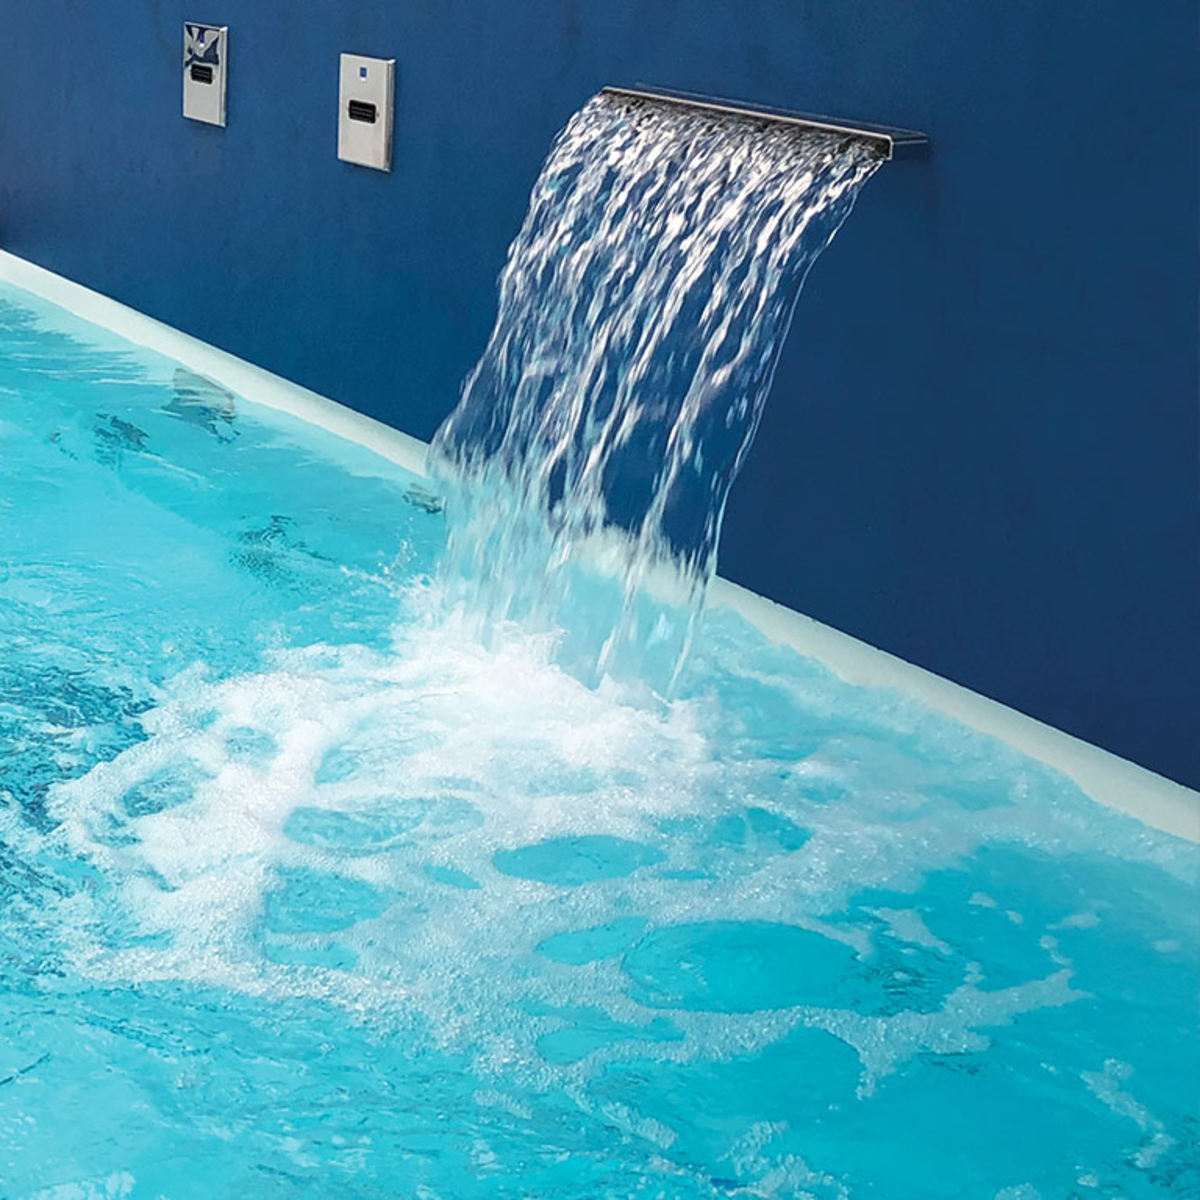 De Aquello waterval geïntegreerd in een muur naast de rand van het zwembad. Het water stroomt in het zwembad.